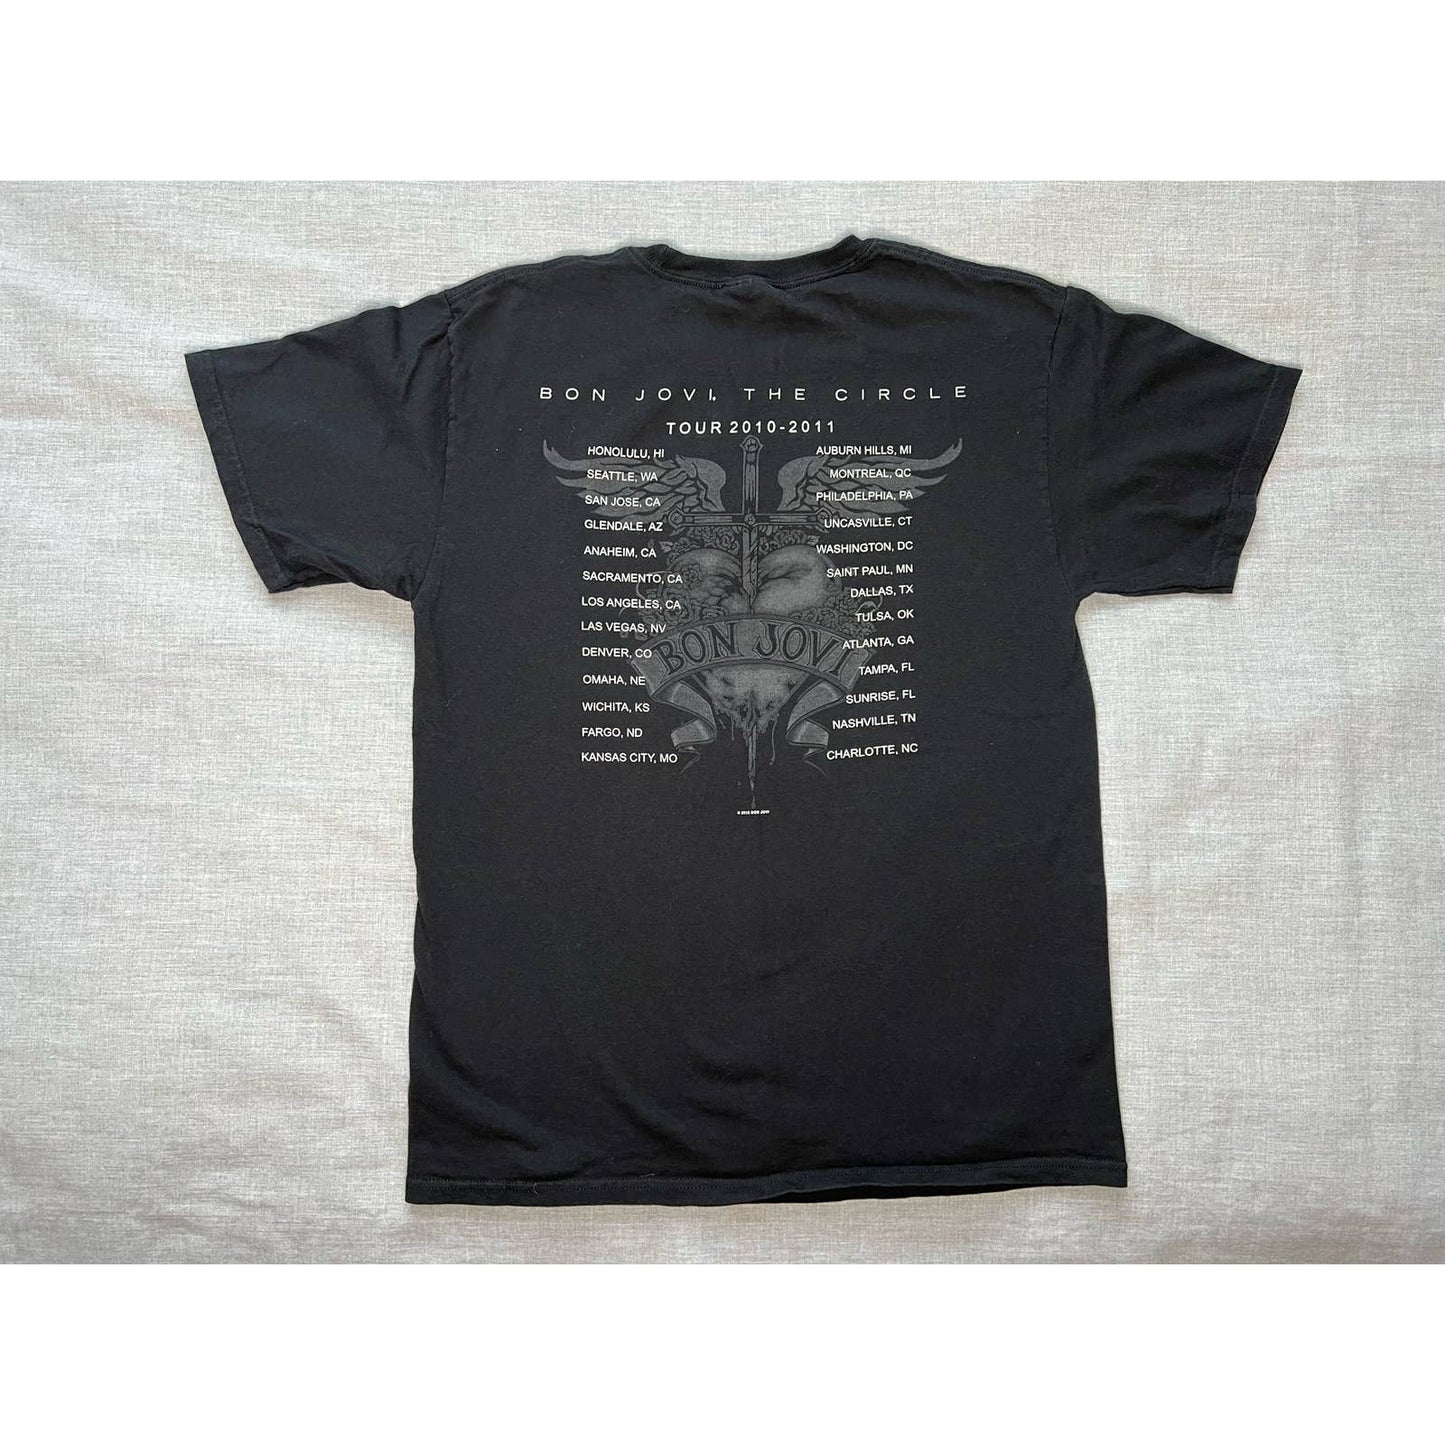 Bon Jovi The Circle Tour 2010-2011 T-shirt Medium